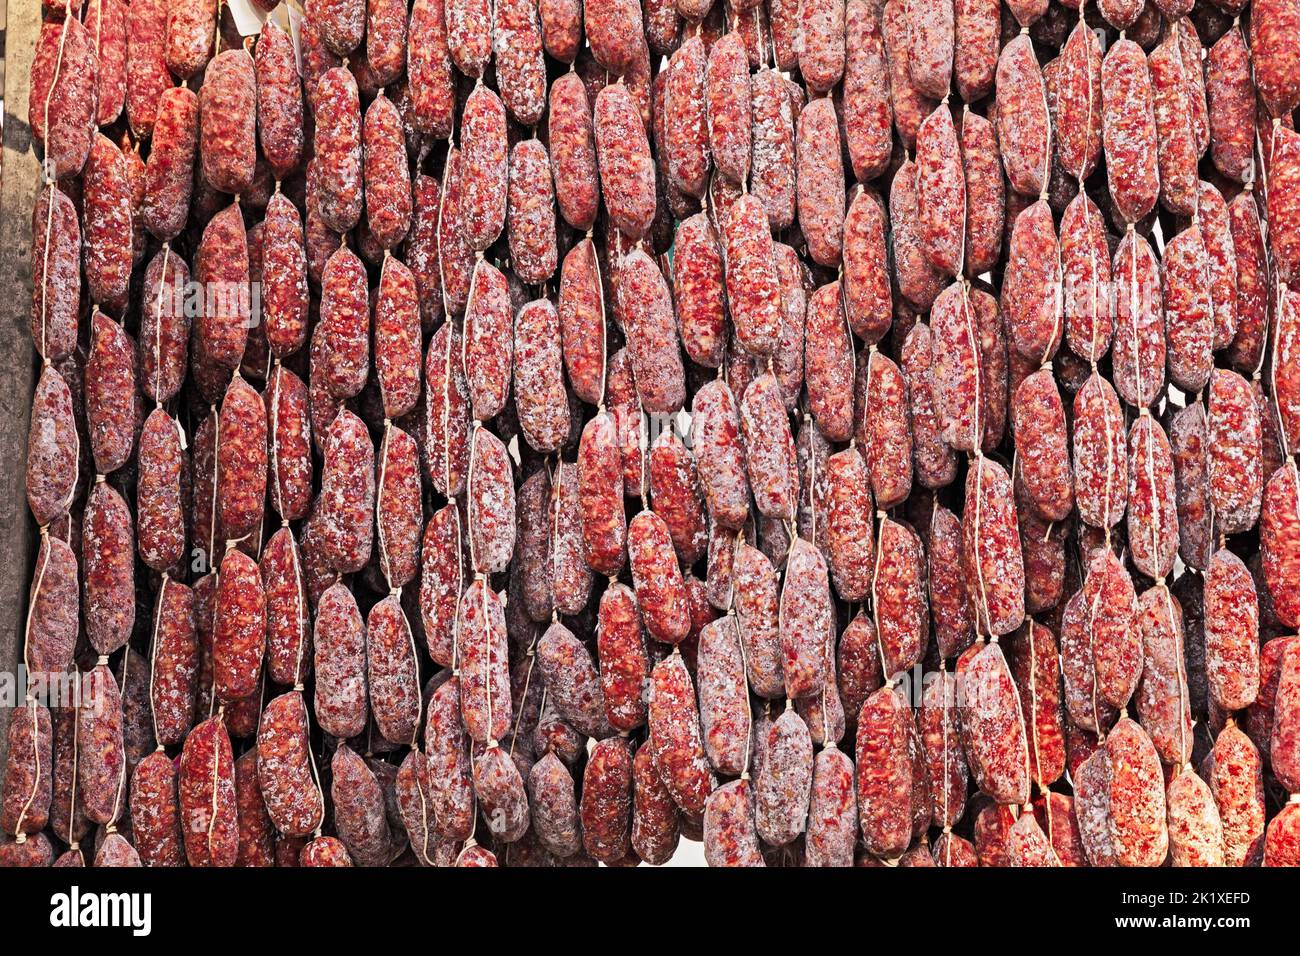 italienische Wurst: Traditionelles, handwerklich hergestelltes Schweinefleisch, gesalzen und mit Gewürzen und Pfeffer gewürzt Stockfoto